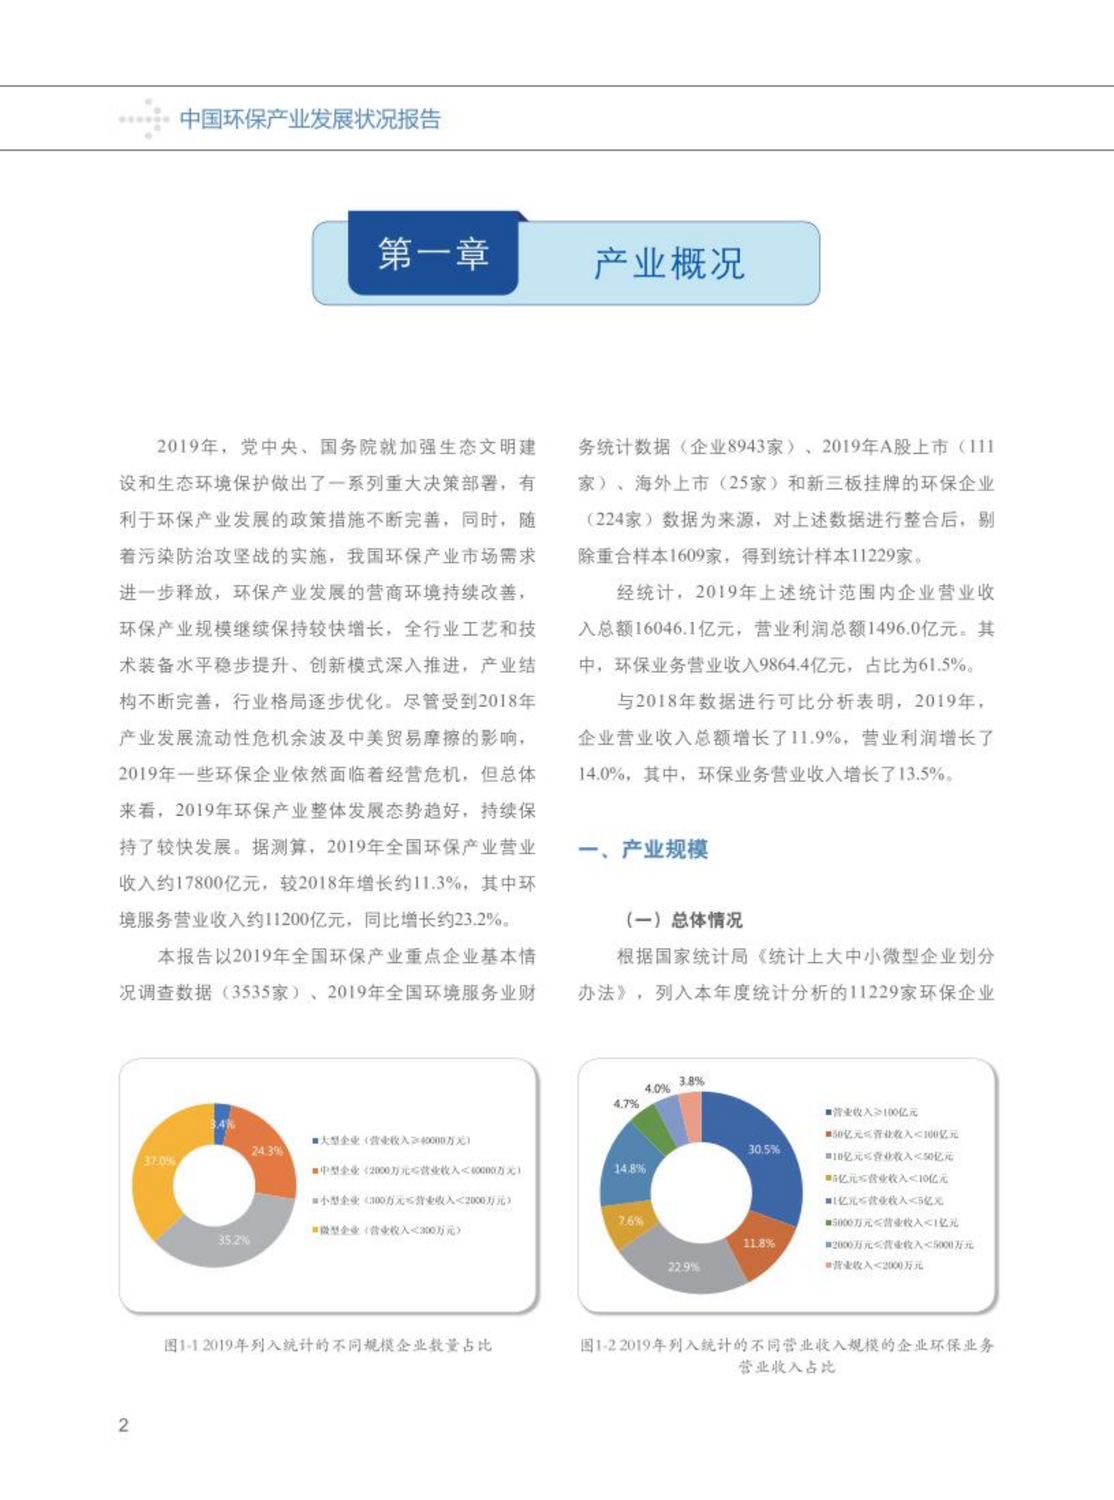 【2020】中国环保产业发展状况报告_03.png